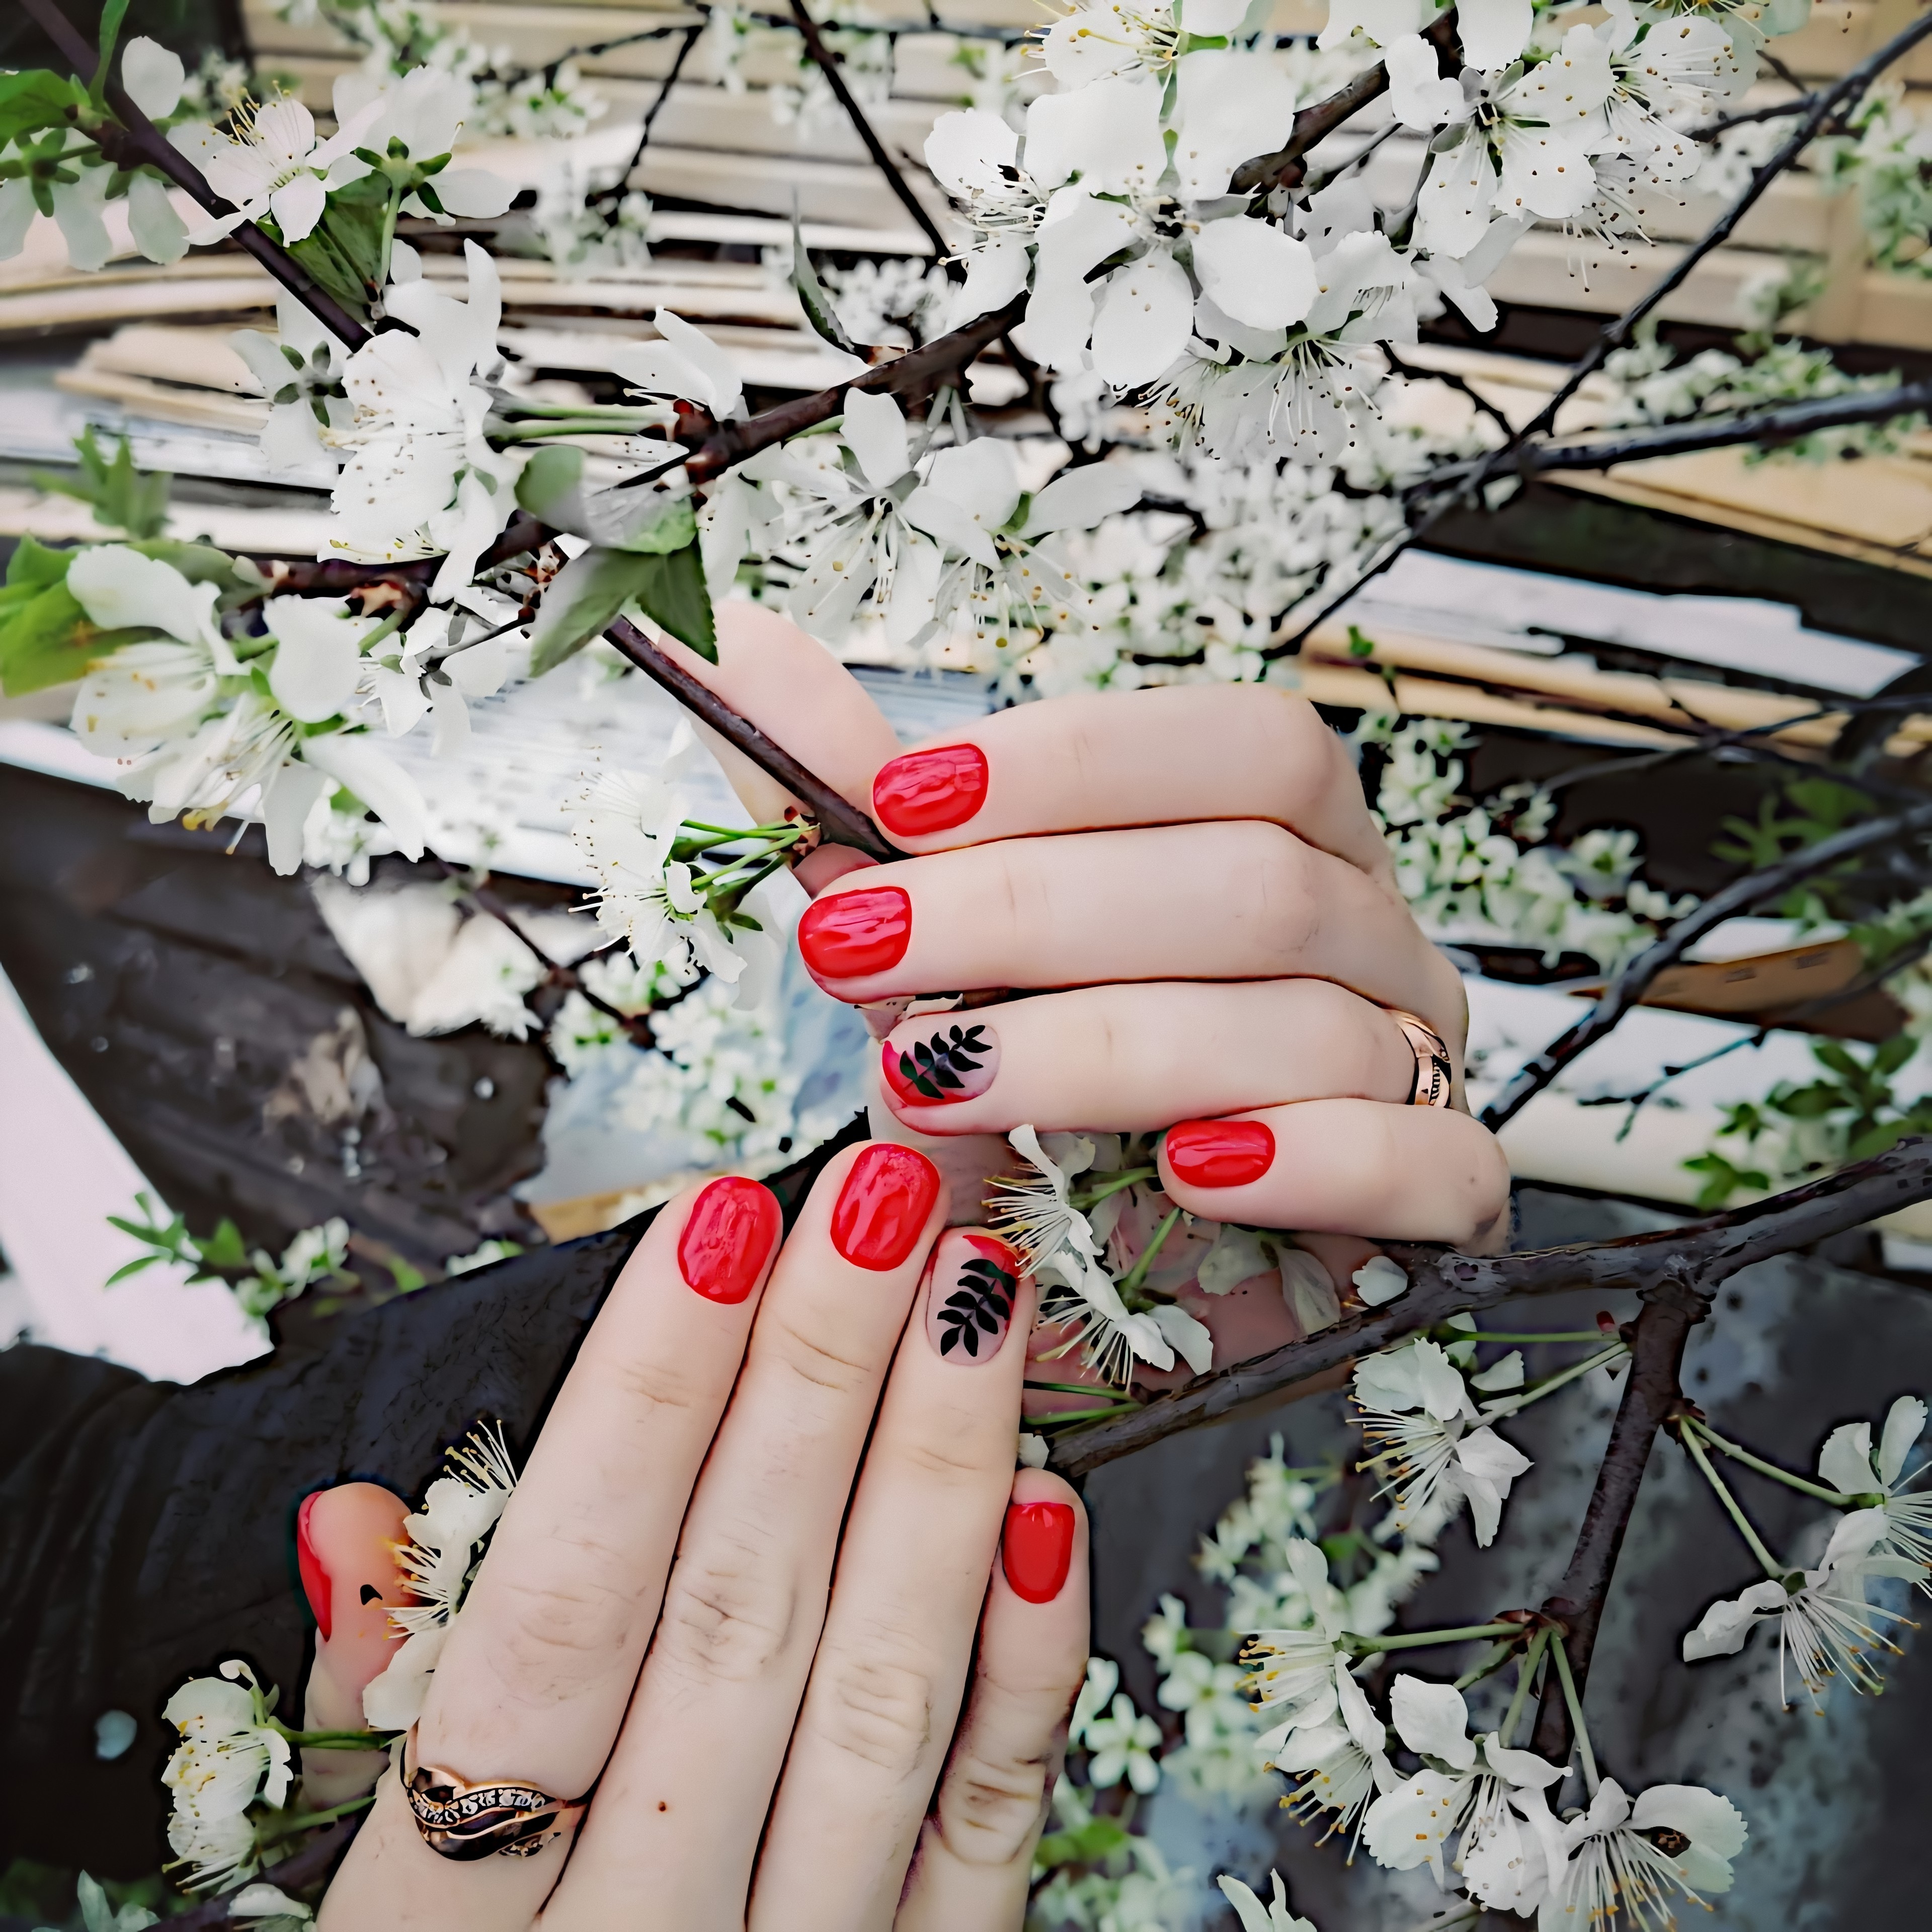 Маникюр с растительным рисунком в красном цвете на короткие ногти.